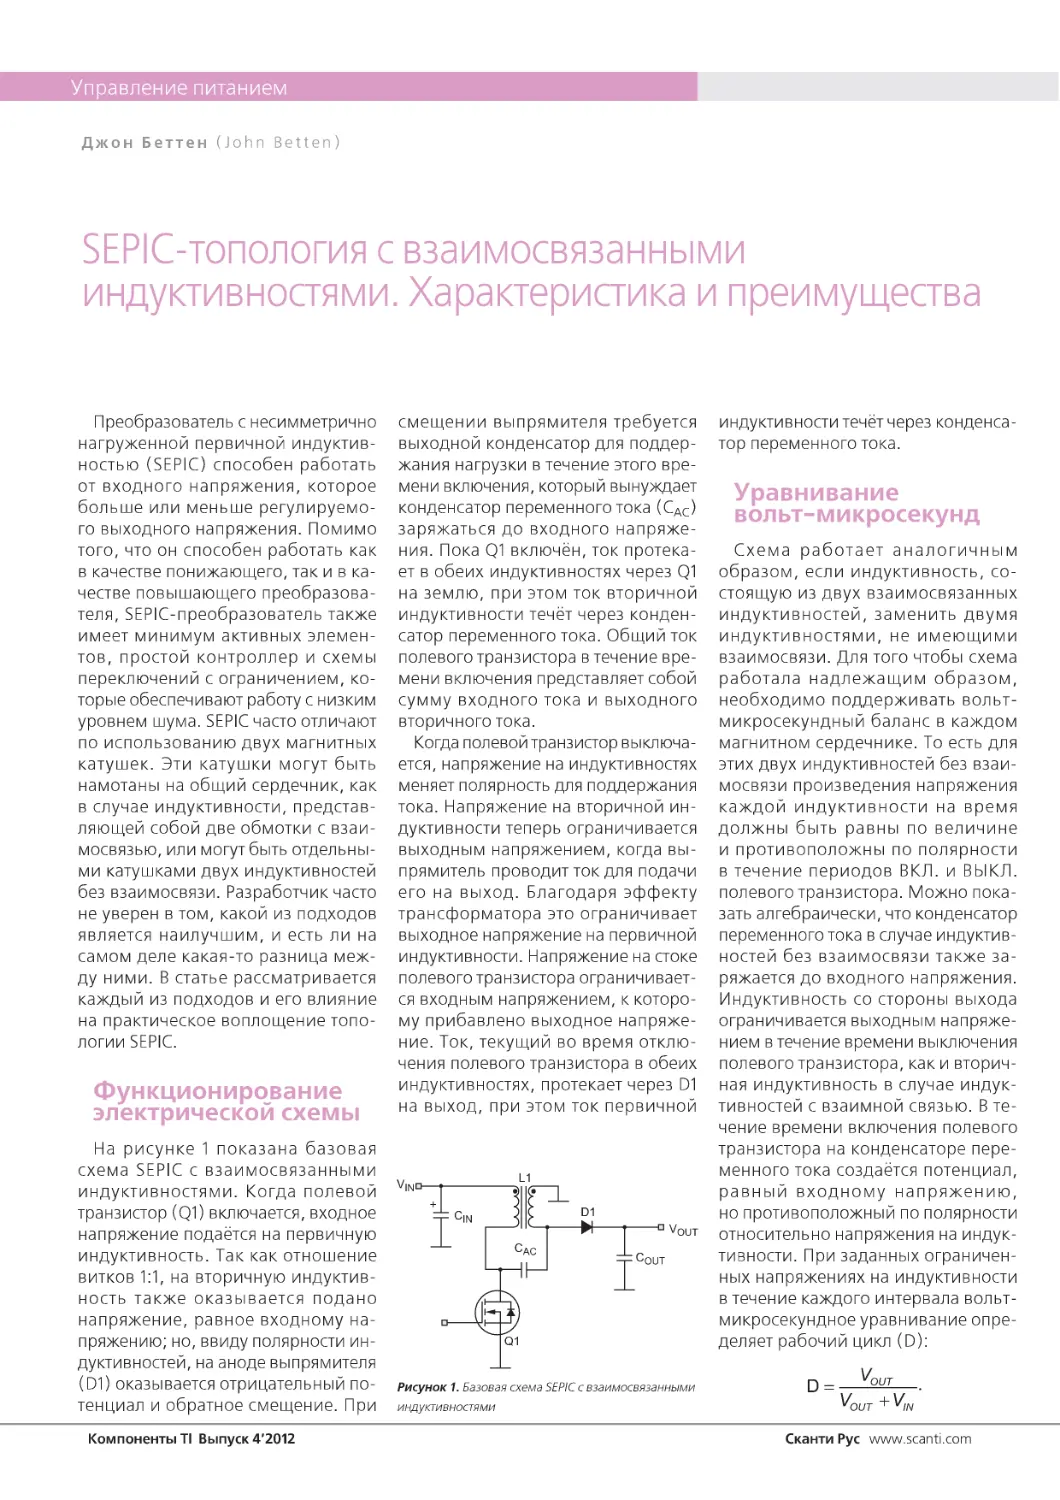 SEPIC-топология с взаимосвязанными индуктивностями. Характеристика и преимущества